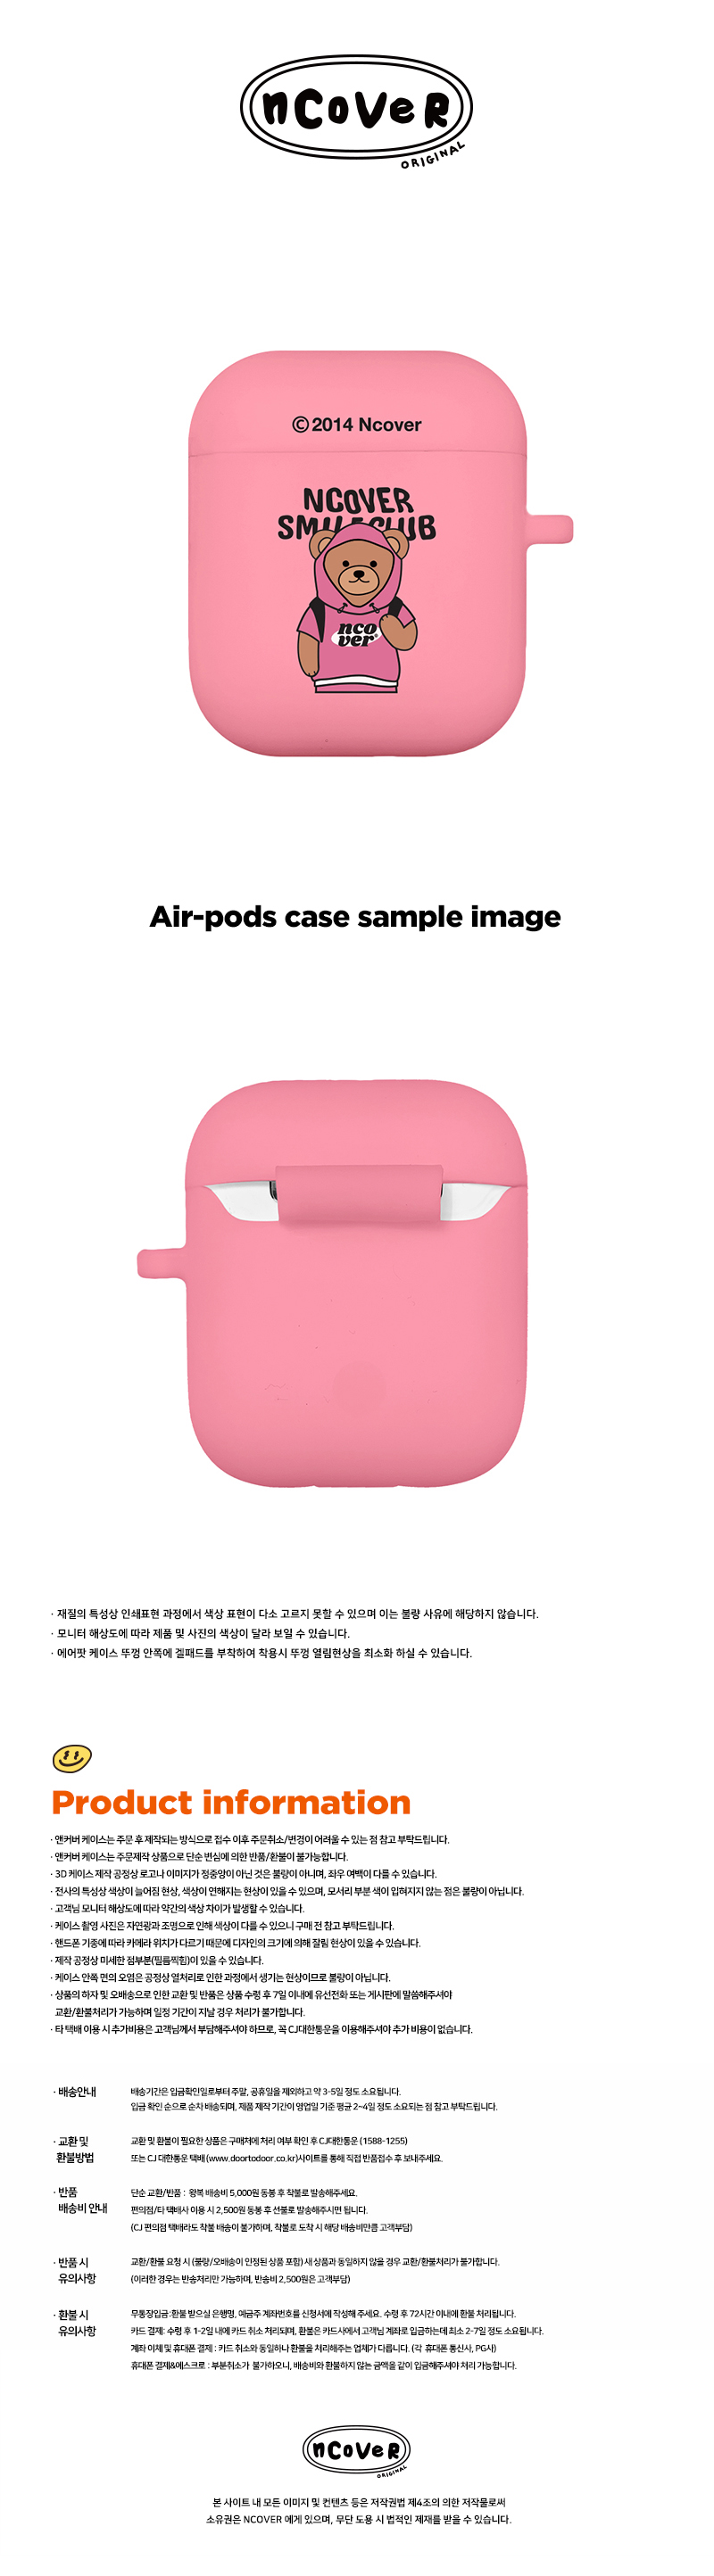 [호환용] Hoodie bruin-pink(airpods jelly)  15,000원 - 바이인터내셔널주식회사 디지털, 이어폰/헤드폰, 이어폰/헤드폰 액세서리, 에어팟/에어팟프로 케이스 바보사랑 [호환용] Hoodie bruin-pink(airpods jelly)  15,000원 - 바이인터내셔널주식회사 디지털, 이어폰/헤드폰, 이어폰/헤드폰 액세서리, 에어팟/에어팟프로 케이스 바보사랑